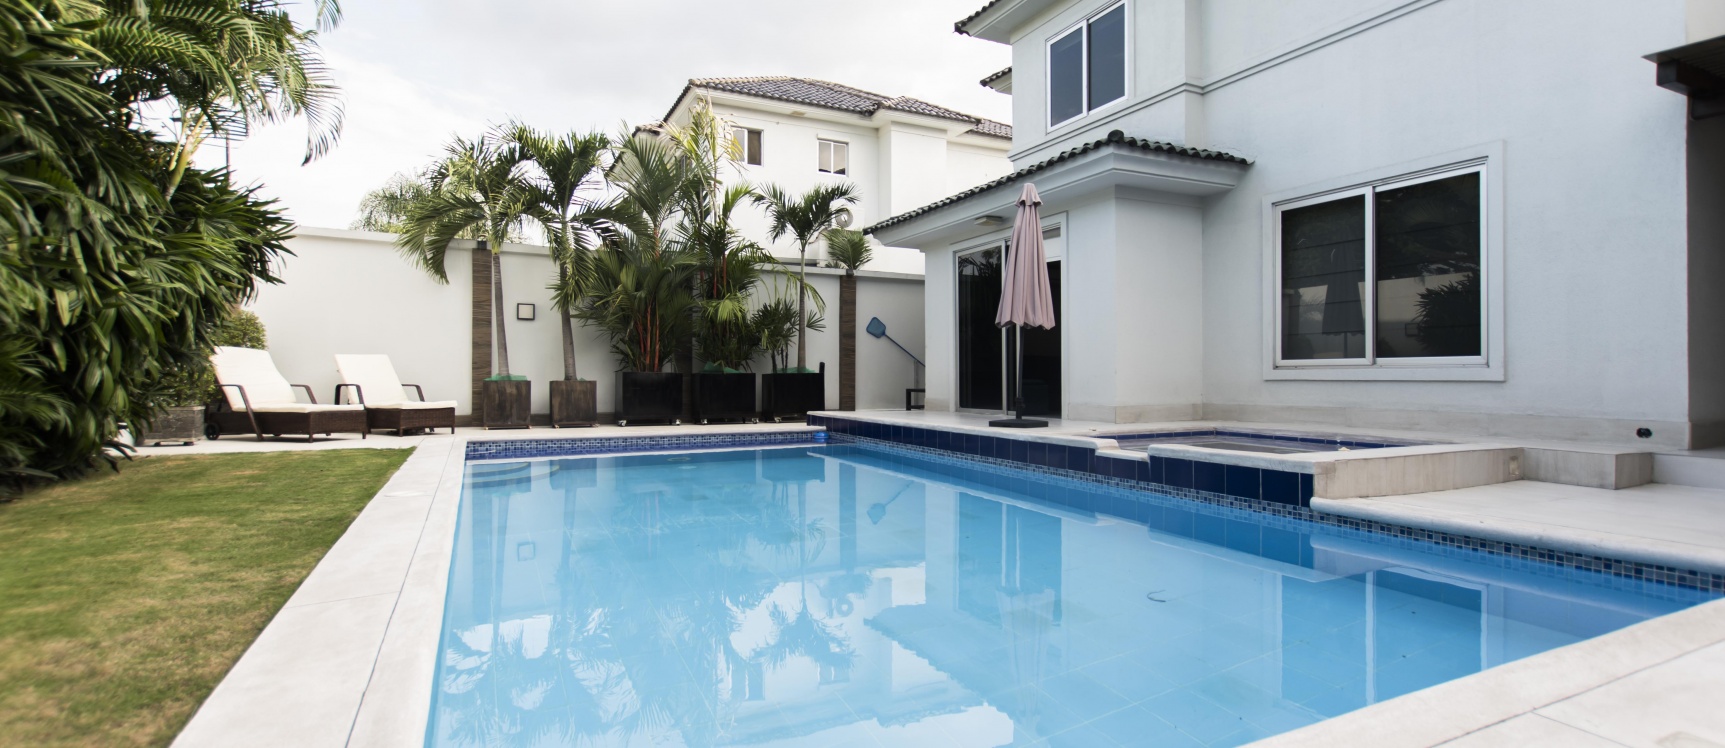 GeoBienes - Casa en venta ubicado en Urbanización Laguna del Sol, Samborondón - Plusvalia Guayaquil Casas de venta y alquiler Inmobiliaria Ecuador